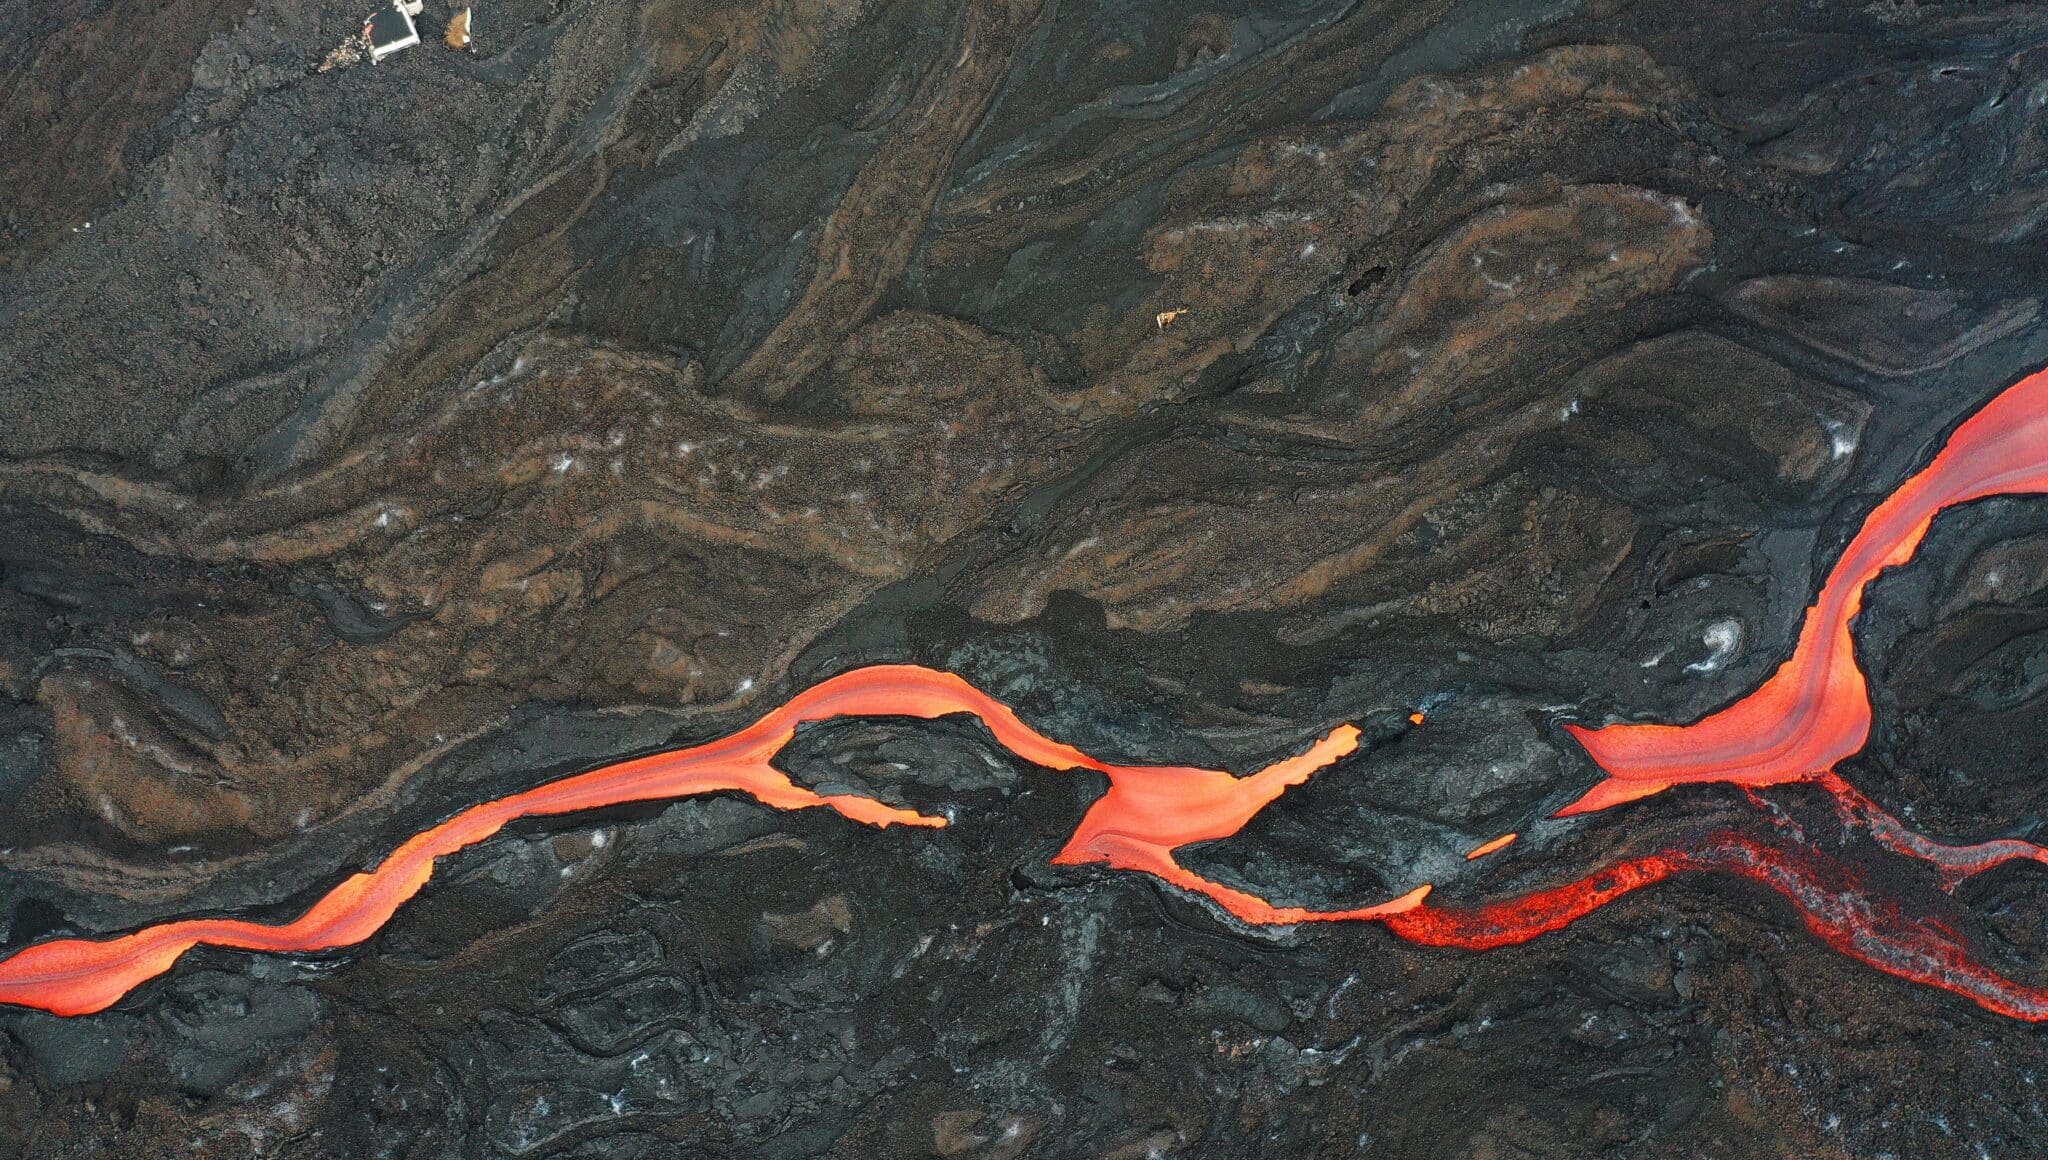 El tejado de una vivienda sobresale de la lava ya solidificada junto a una rio de magma que discurre por la fajana creada por la erupción del volcán Cumbre Vieja. La sismicidad asociada al volcán ha aumentado en las últimas horas en los niveles profundos a más de 20 kilómetros bajo tierra